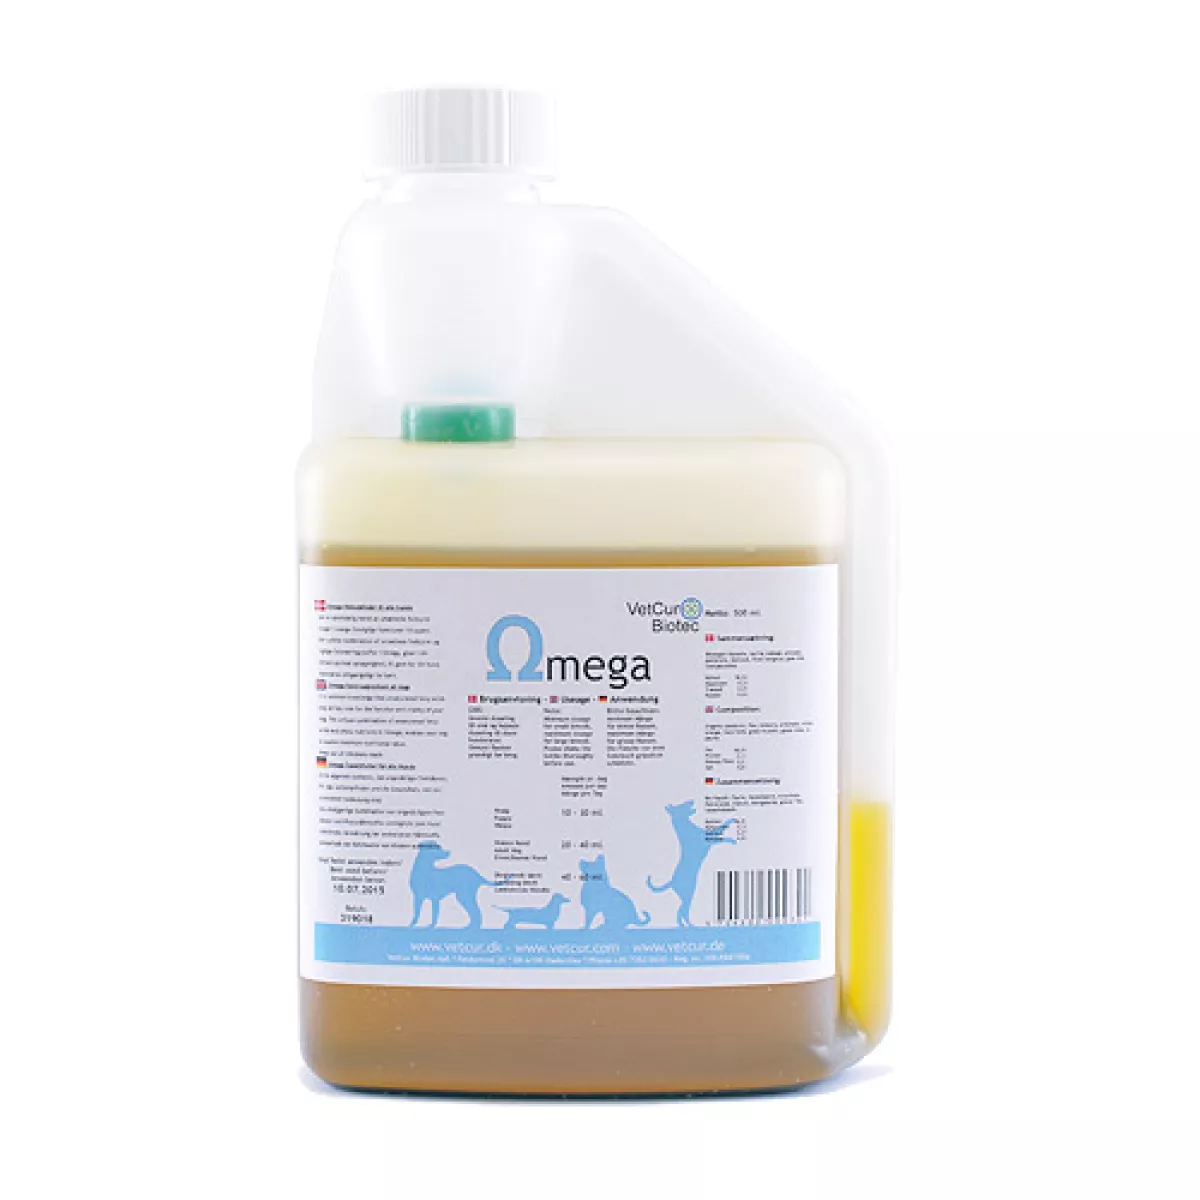 #1 - Omega Olietilskud omega 3,6,9 fedtsyrer 500ml fra Vetcur biotec